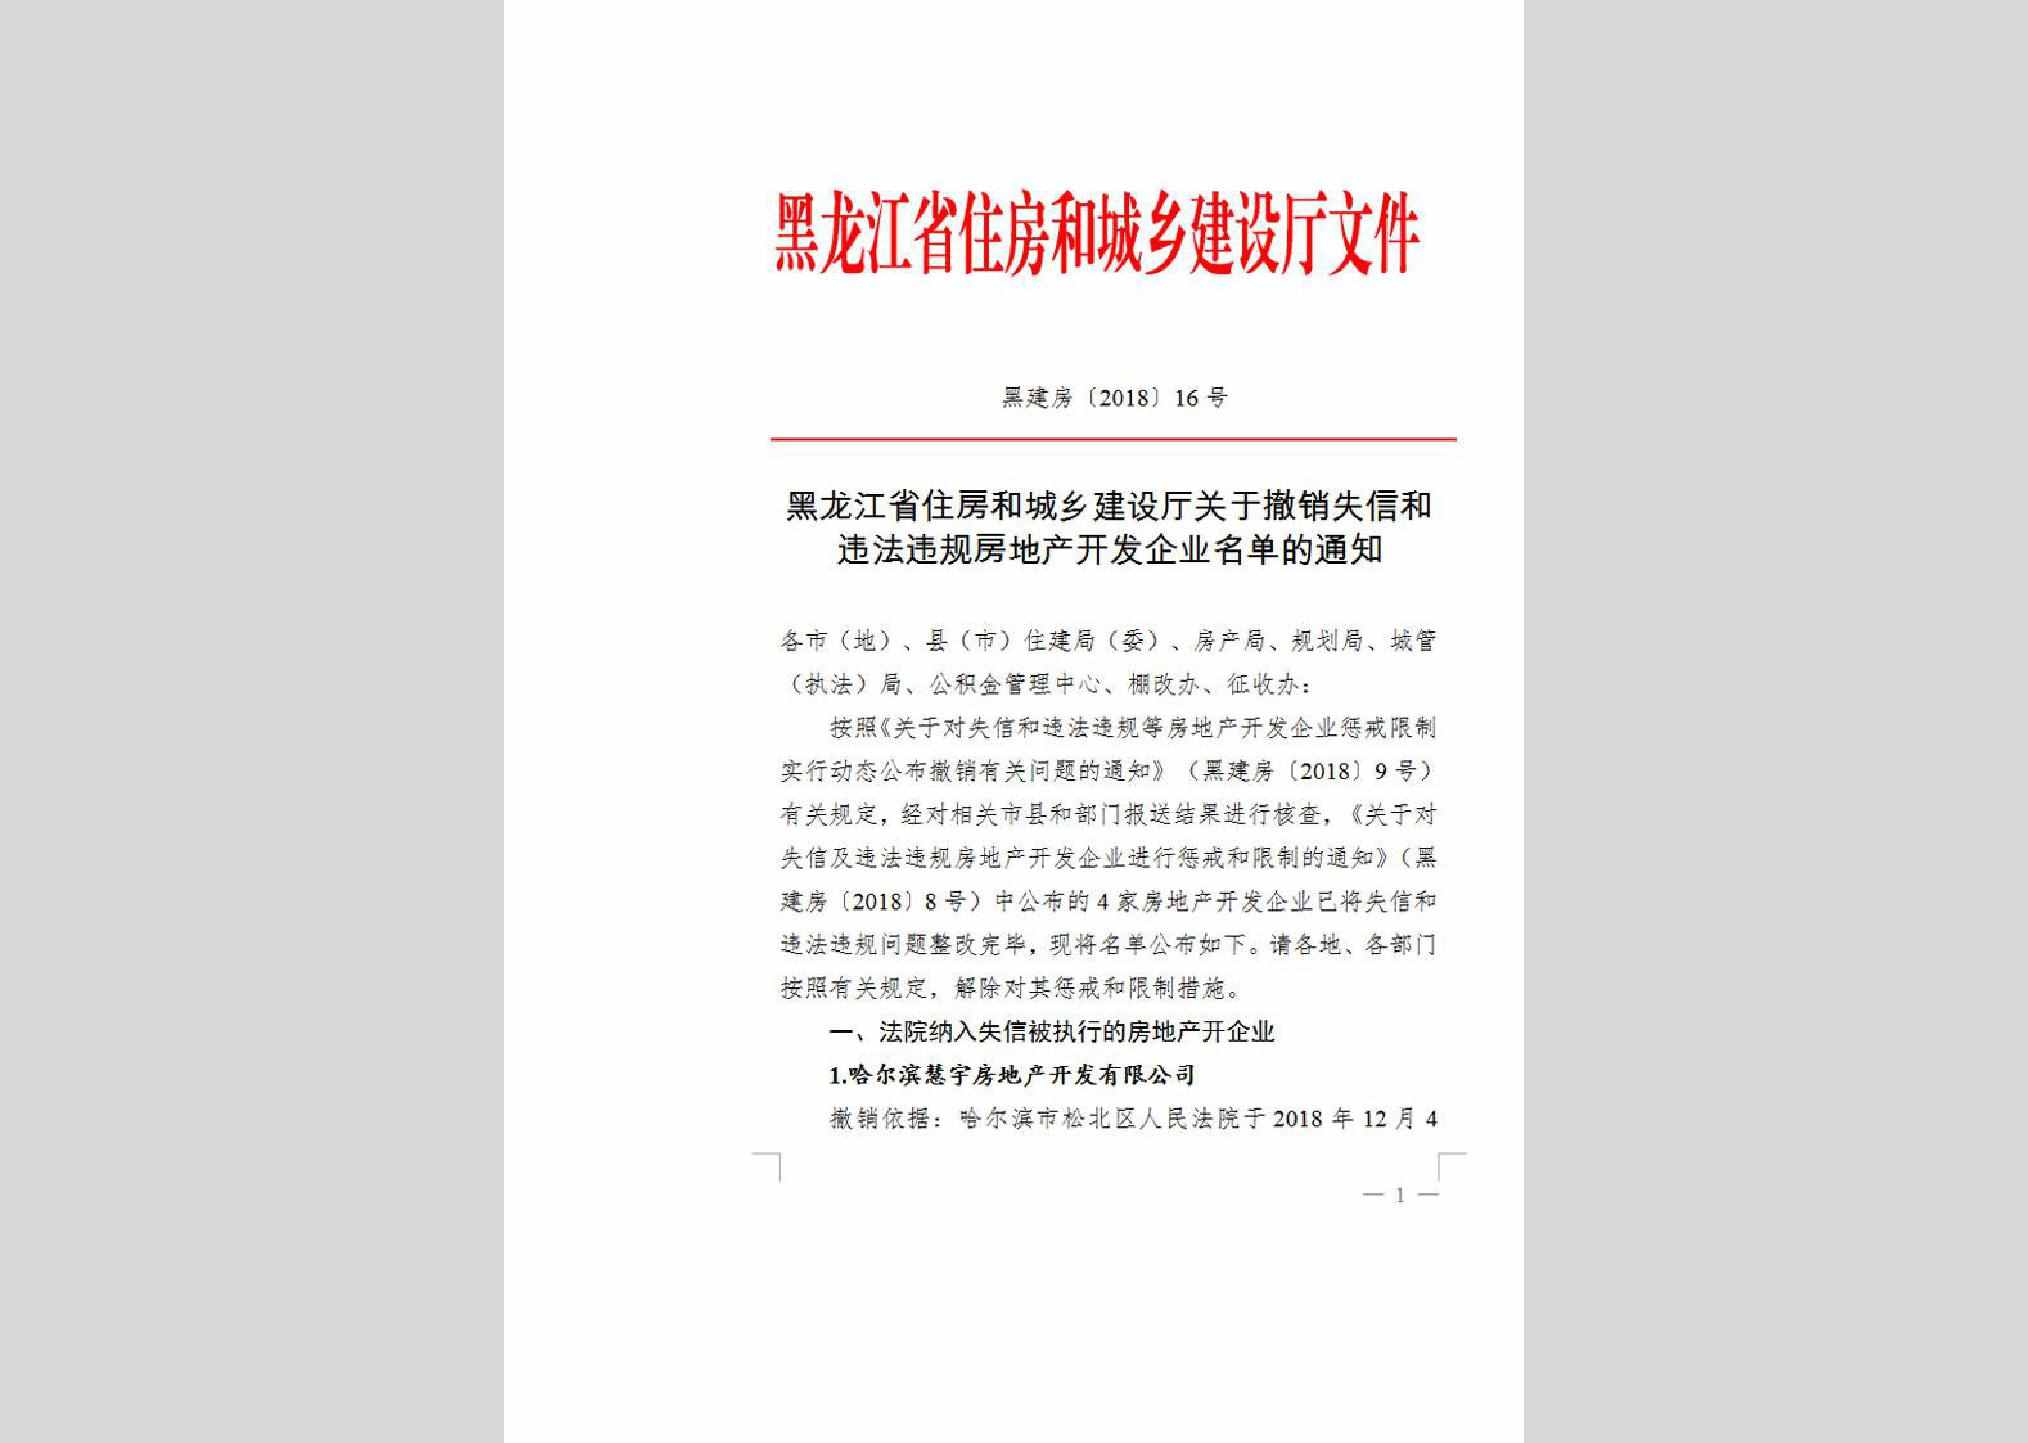 黑建房[2018]16号：黑龙江省住房和城乡建设厅关于撤销失信和违法违规房地产开发企业名单的通知